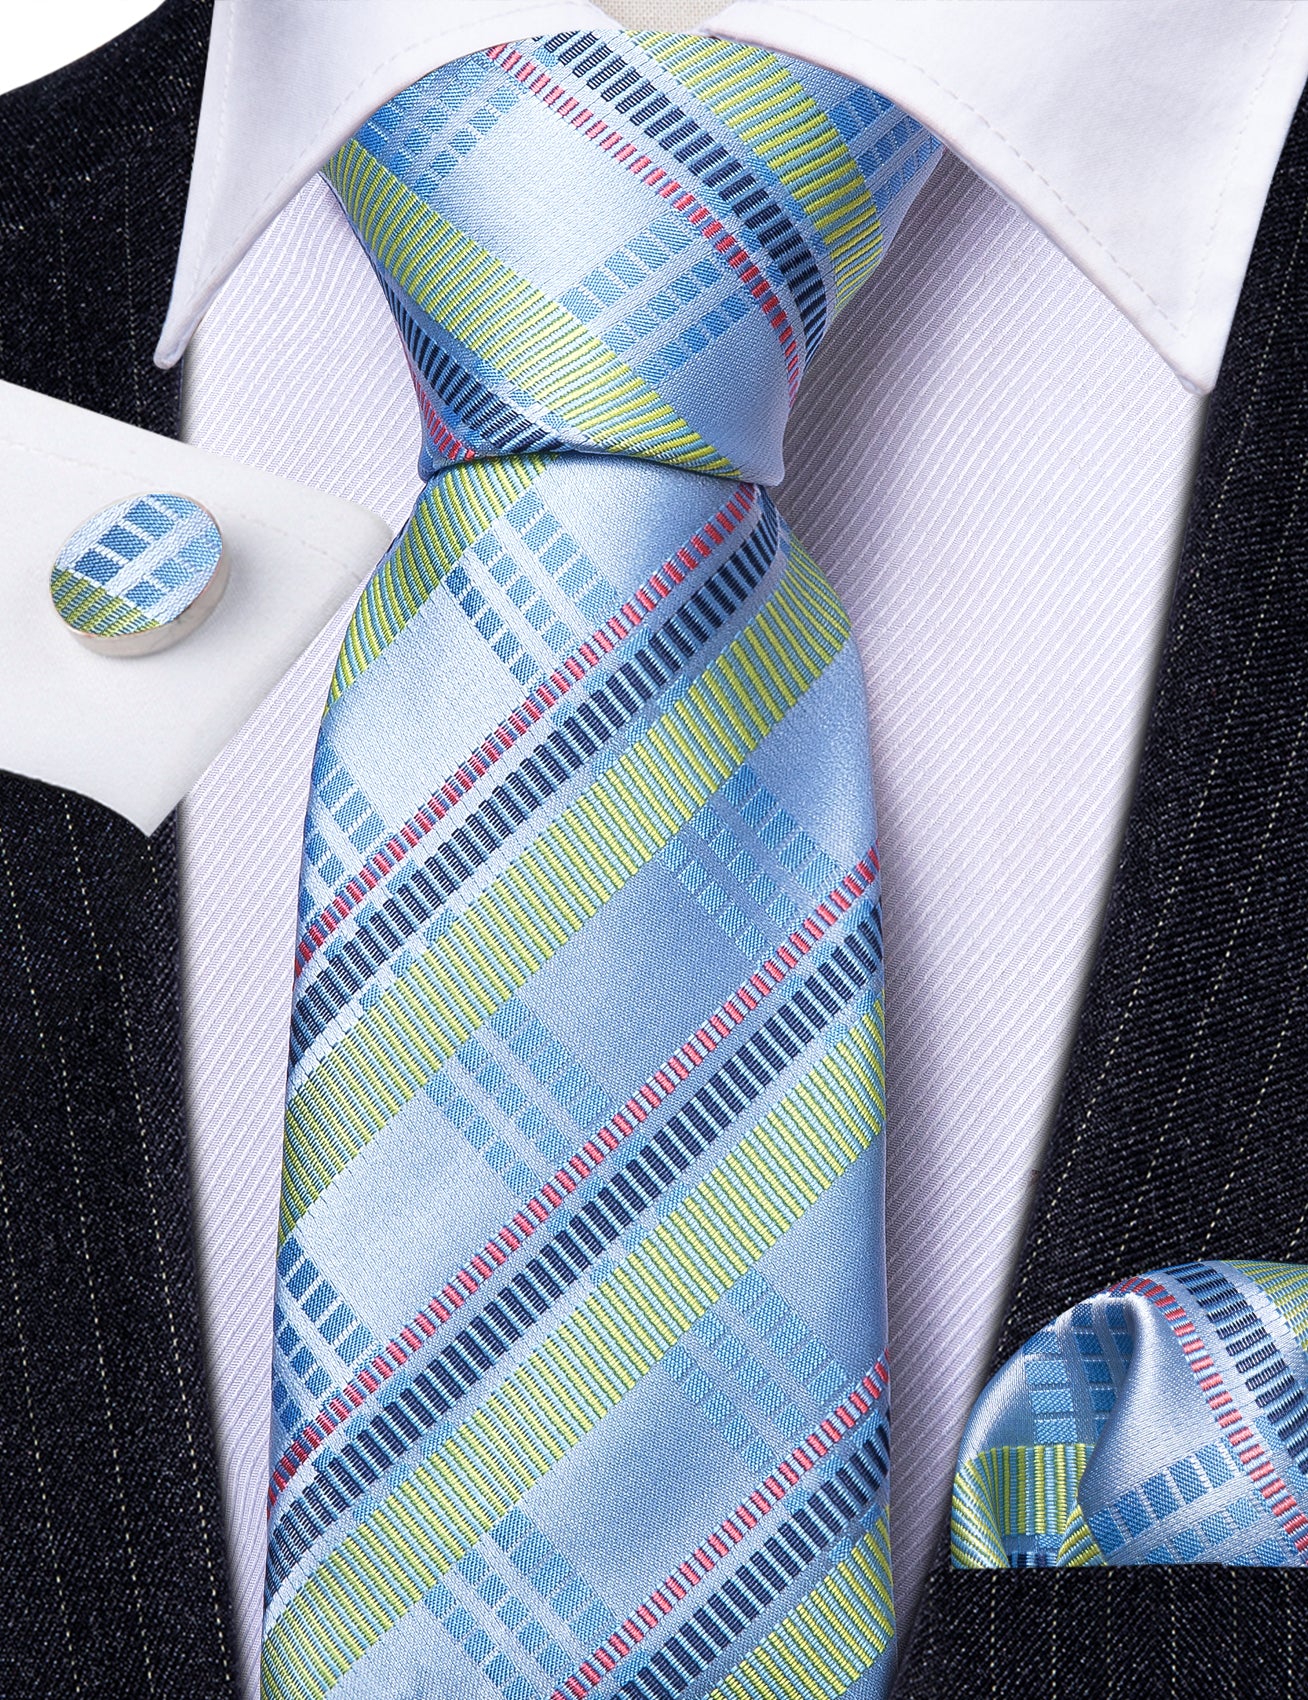 Turquoise Blue Striped Tie Handkerchief Cufflinks Set